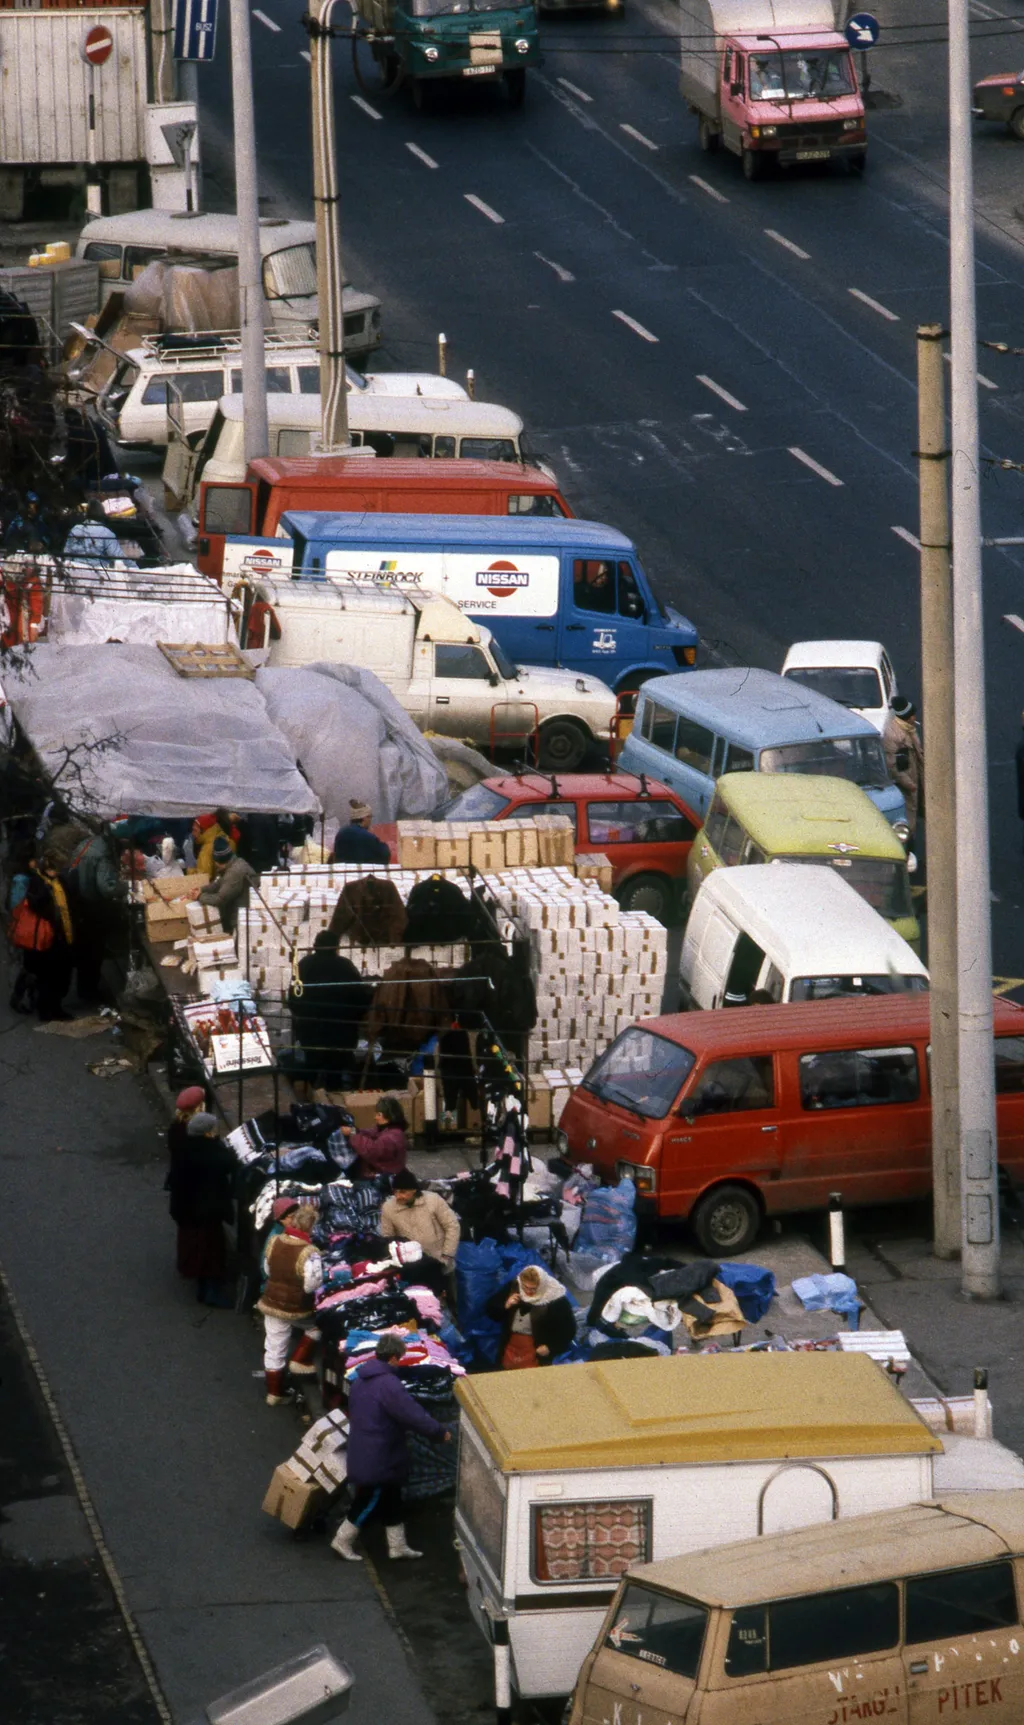 lengyel piac galéria 2021. Magyarország,
Budapest VIII.
Kerepesi út, KGST piac a Keleti pályaudvar közelében.
ÉV
1989 